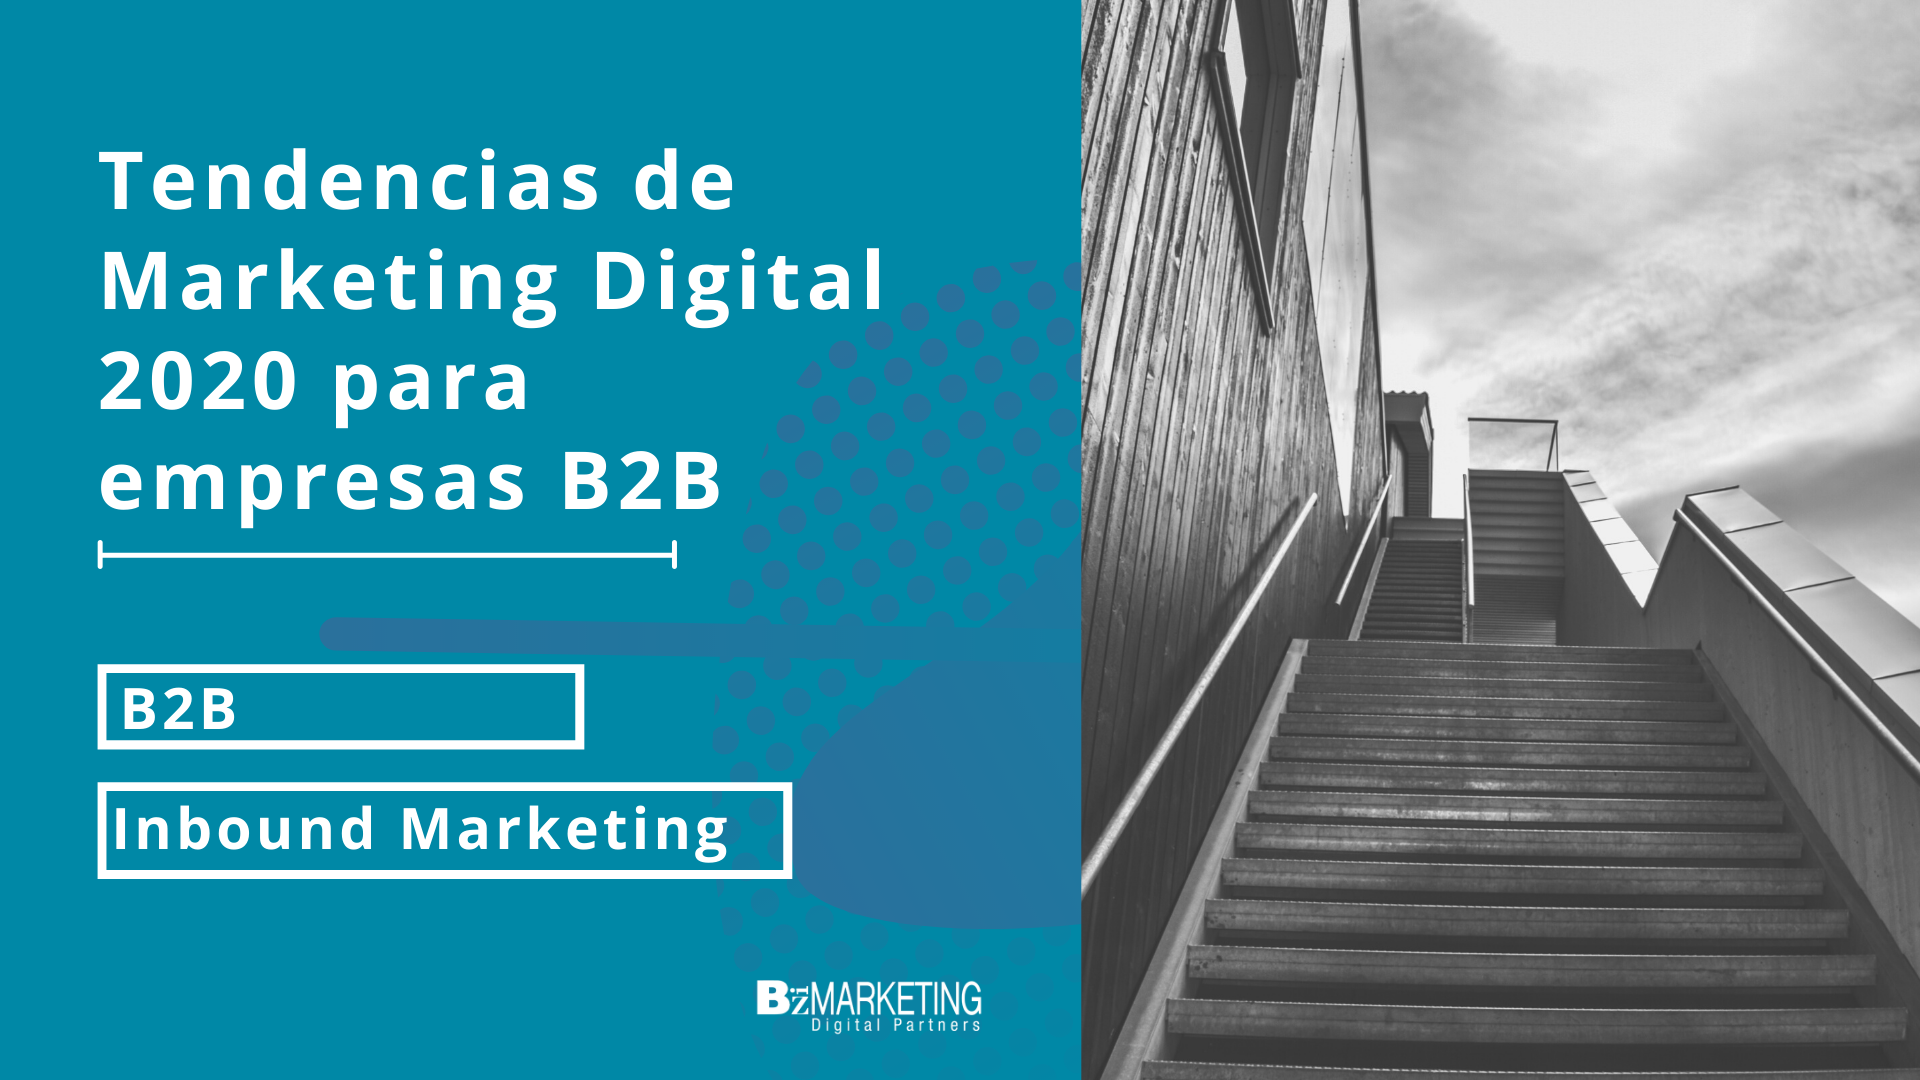 Tendencias de Marketing Digital 2020 para empresas B2B